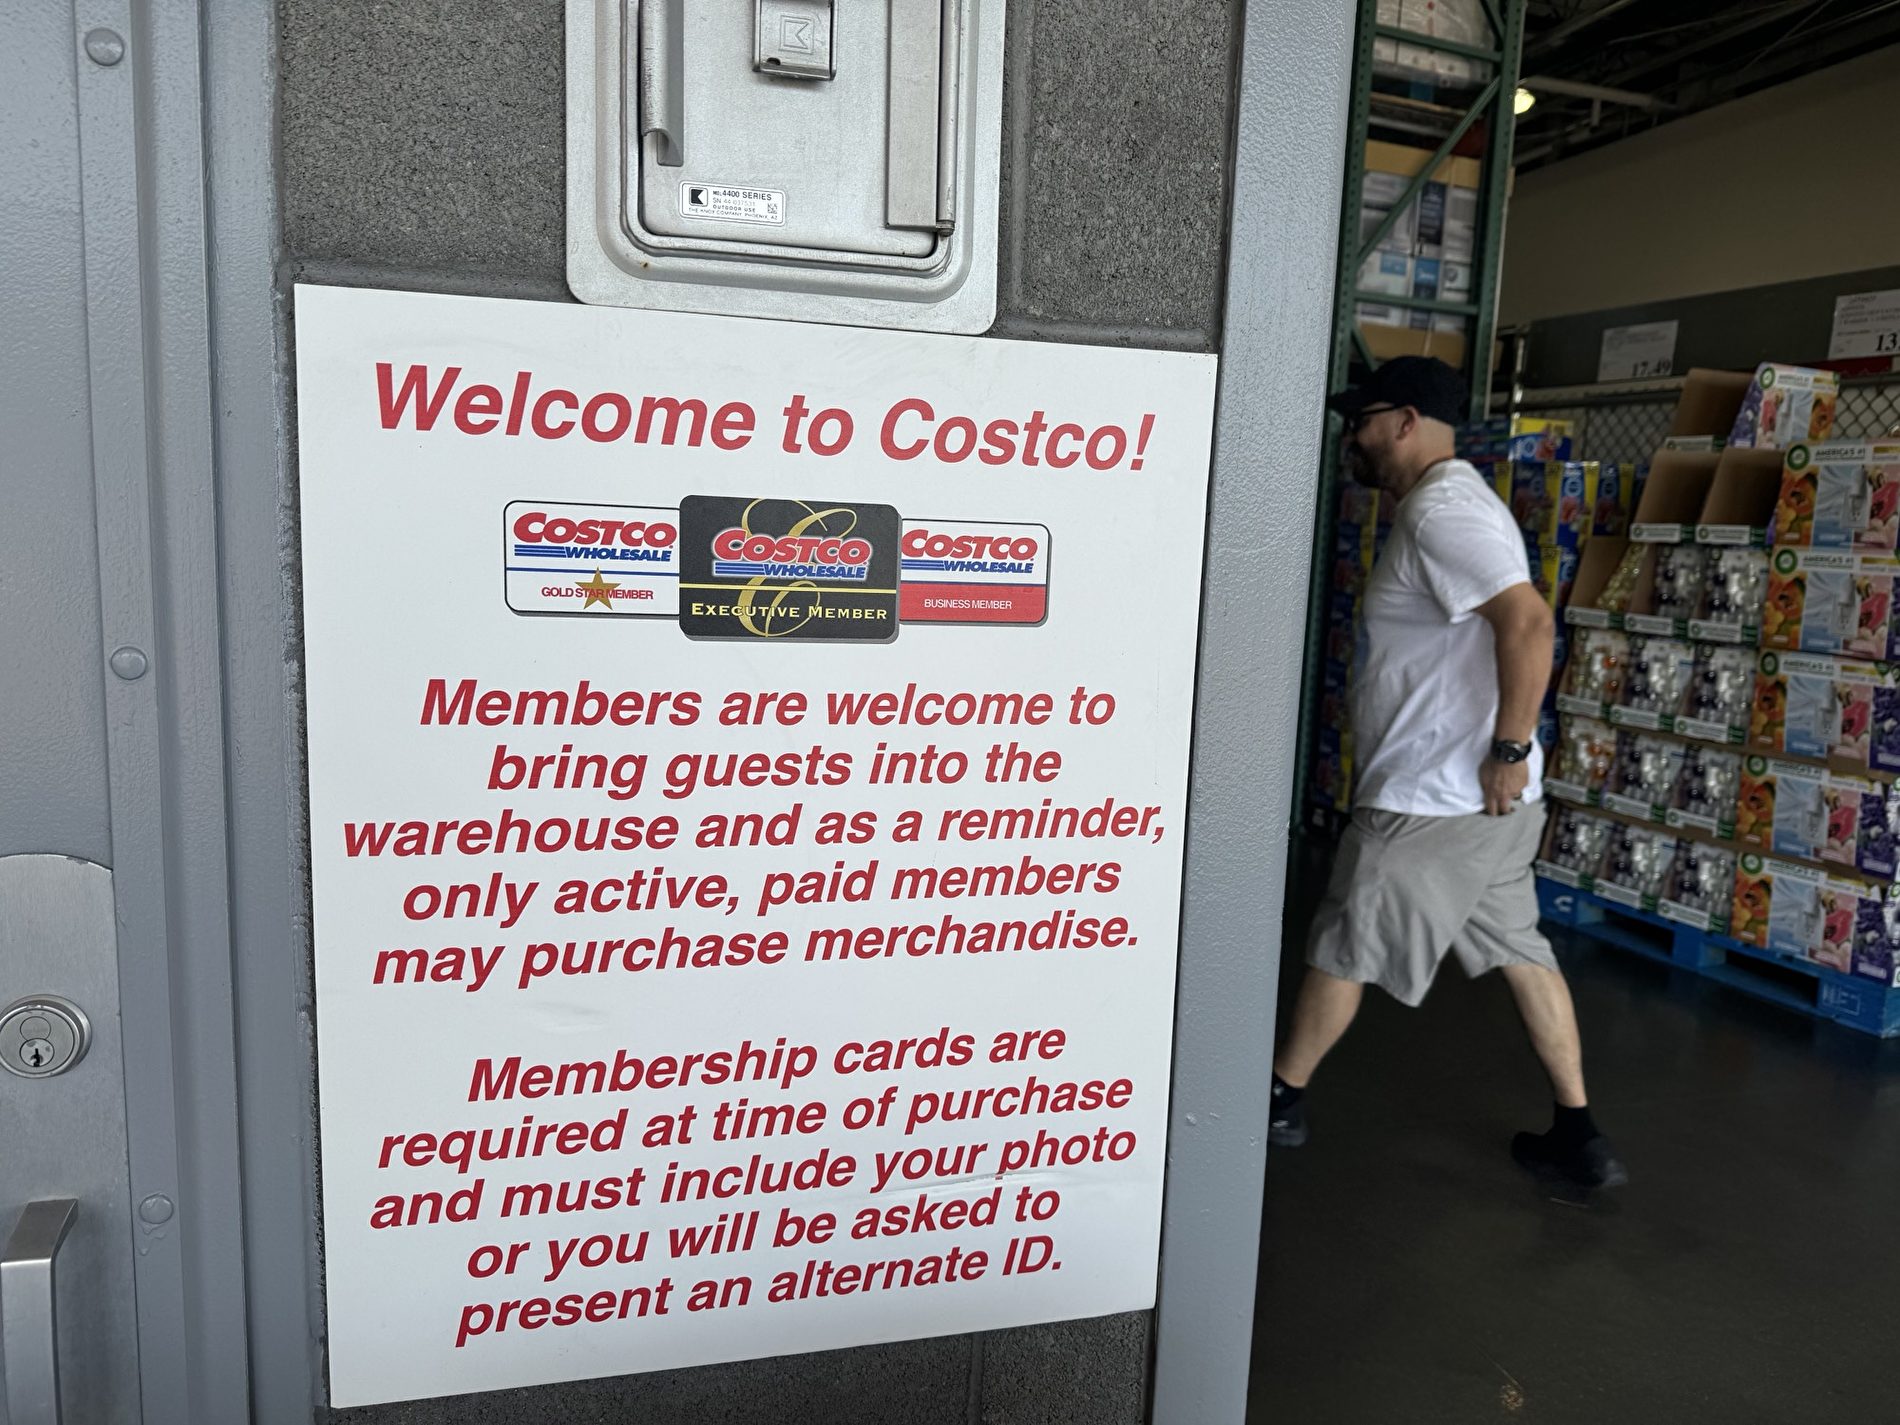 Costco打擊會員卡濫用 借卡或惹上官司